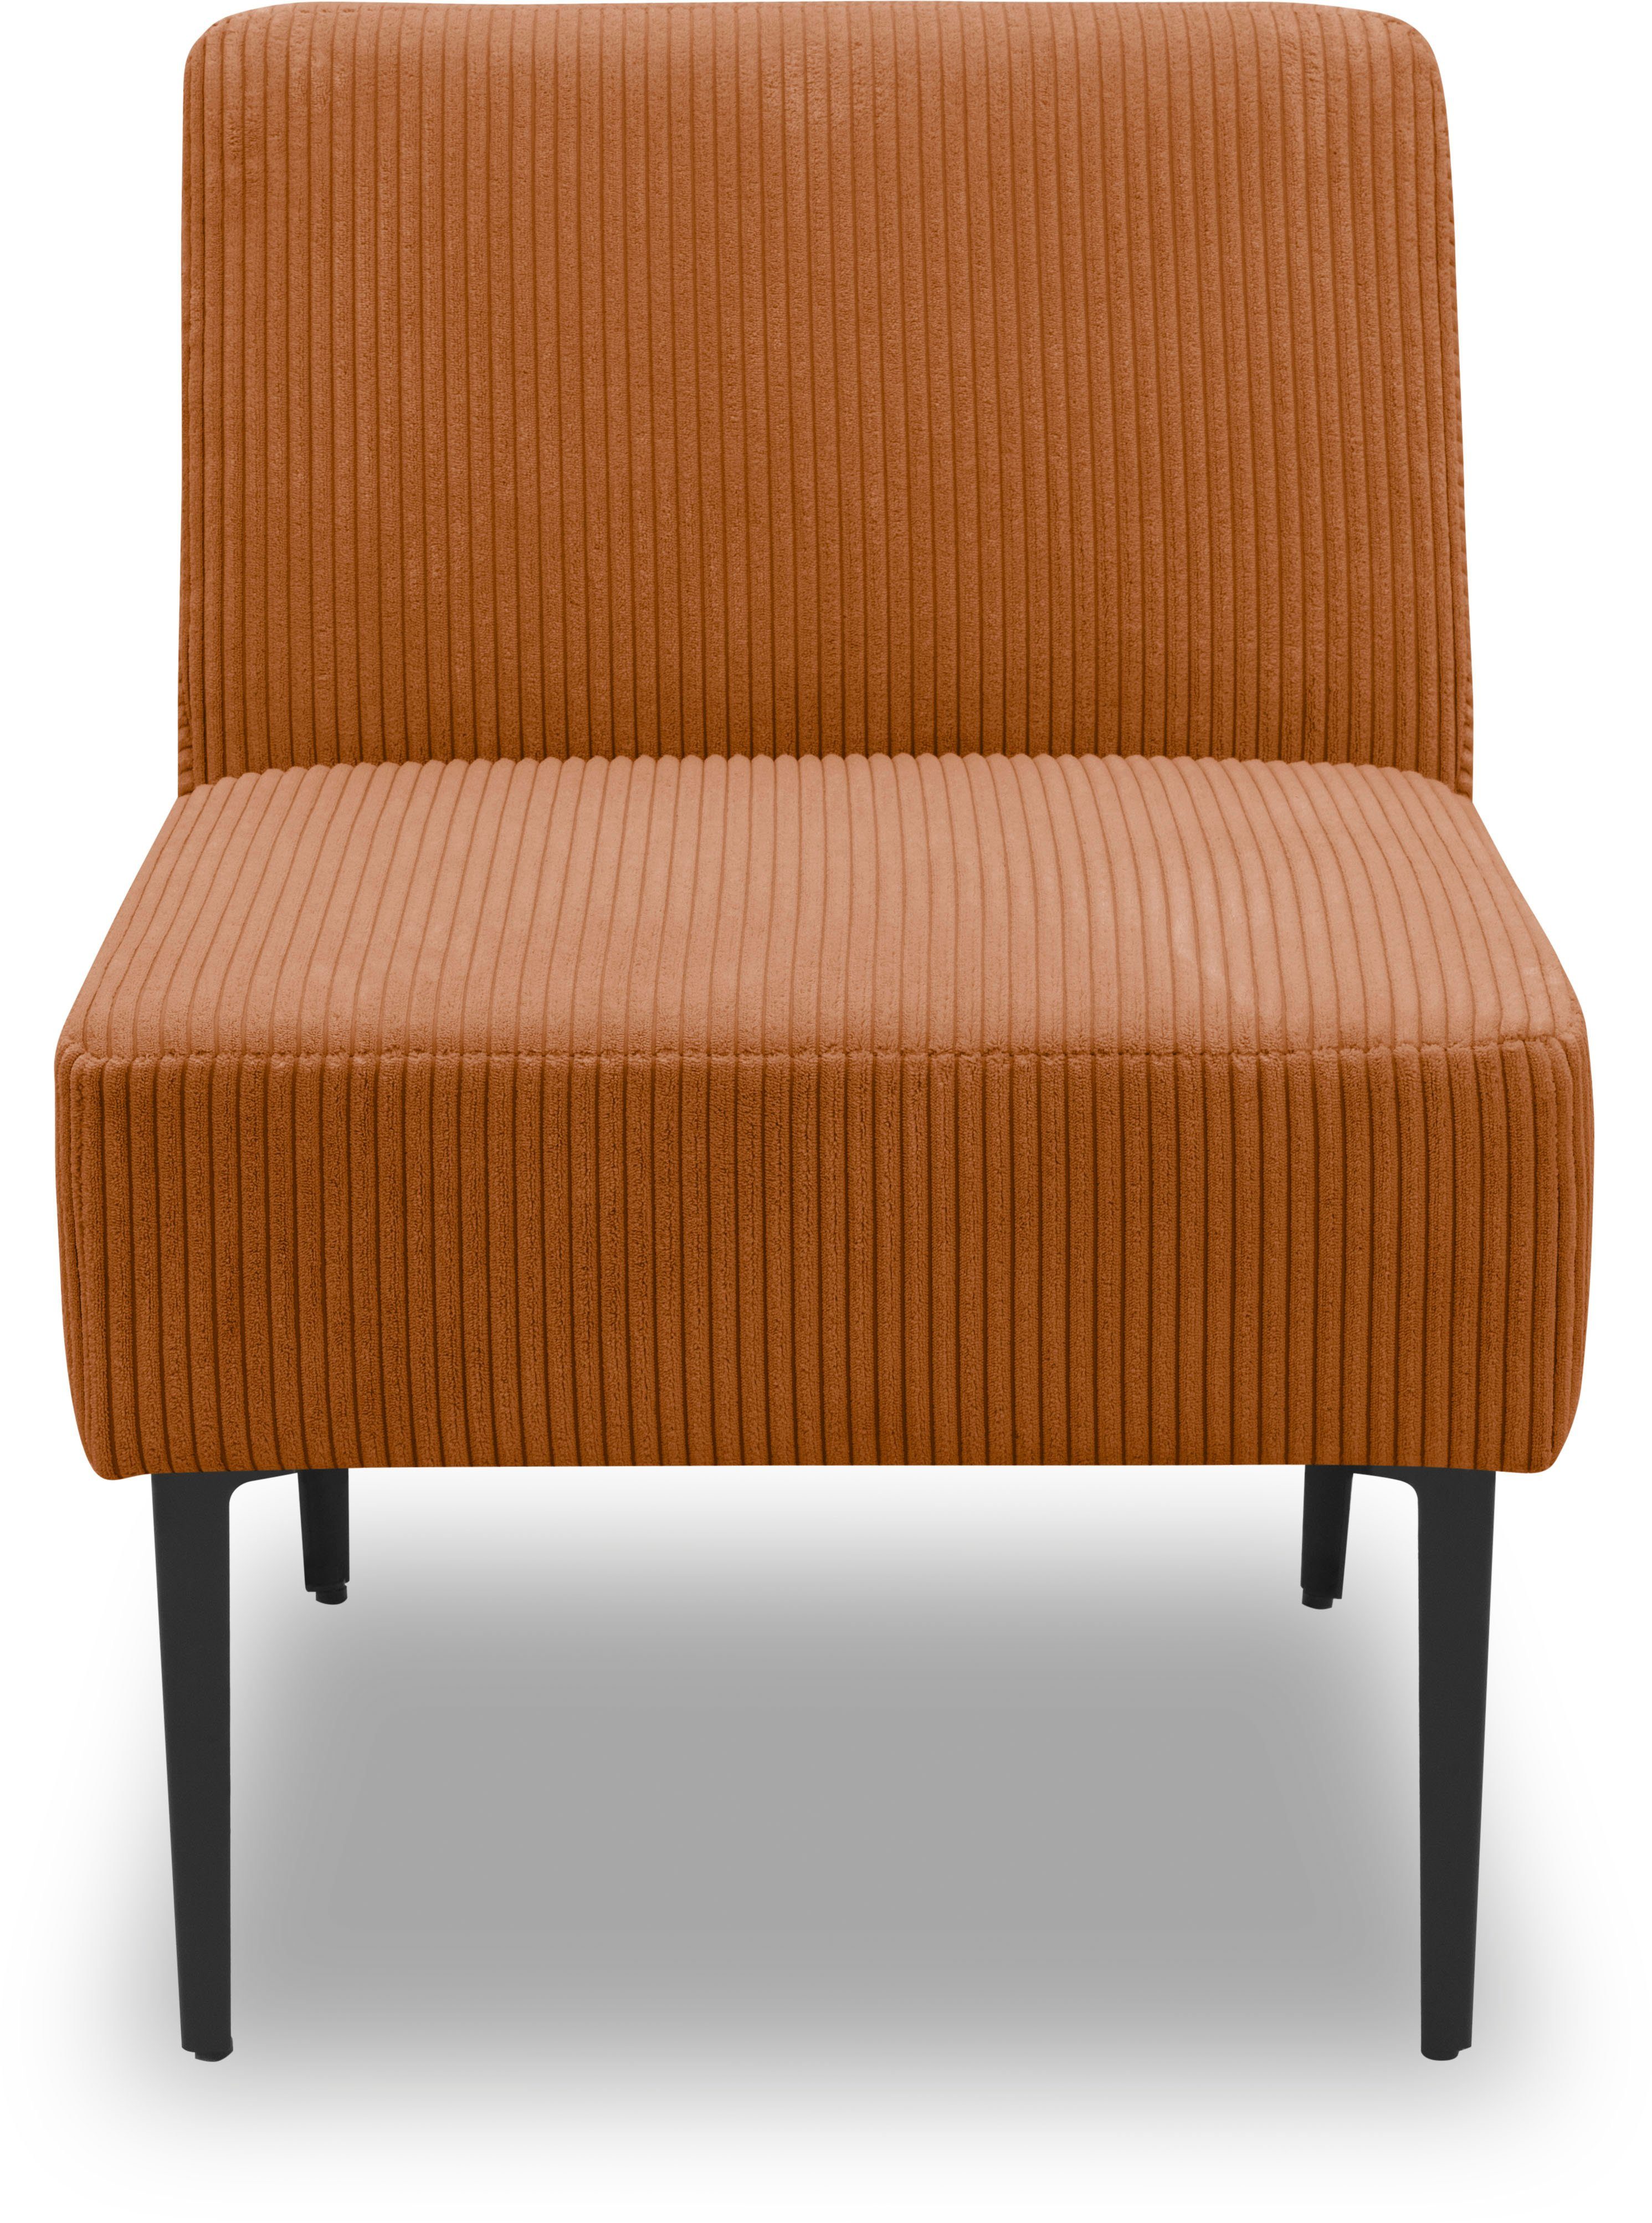 DOMO collection Sessel 700010, für individuelle Zusammenstellung eines persönlichen Sofas terrakotta